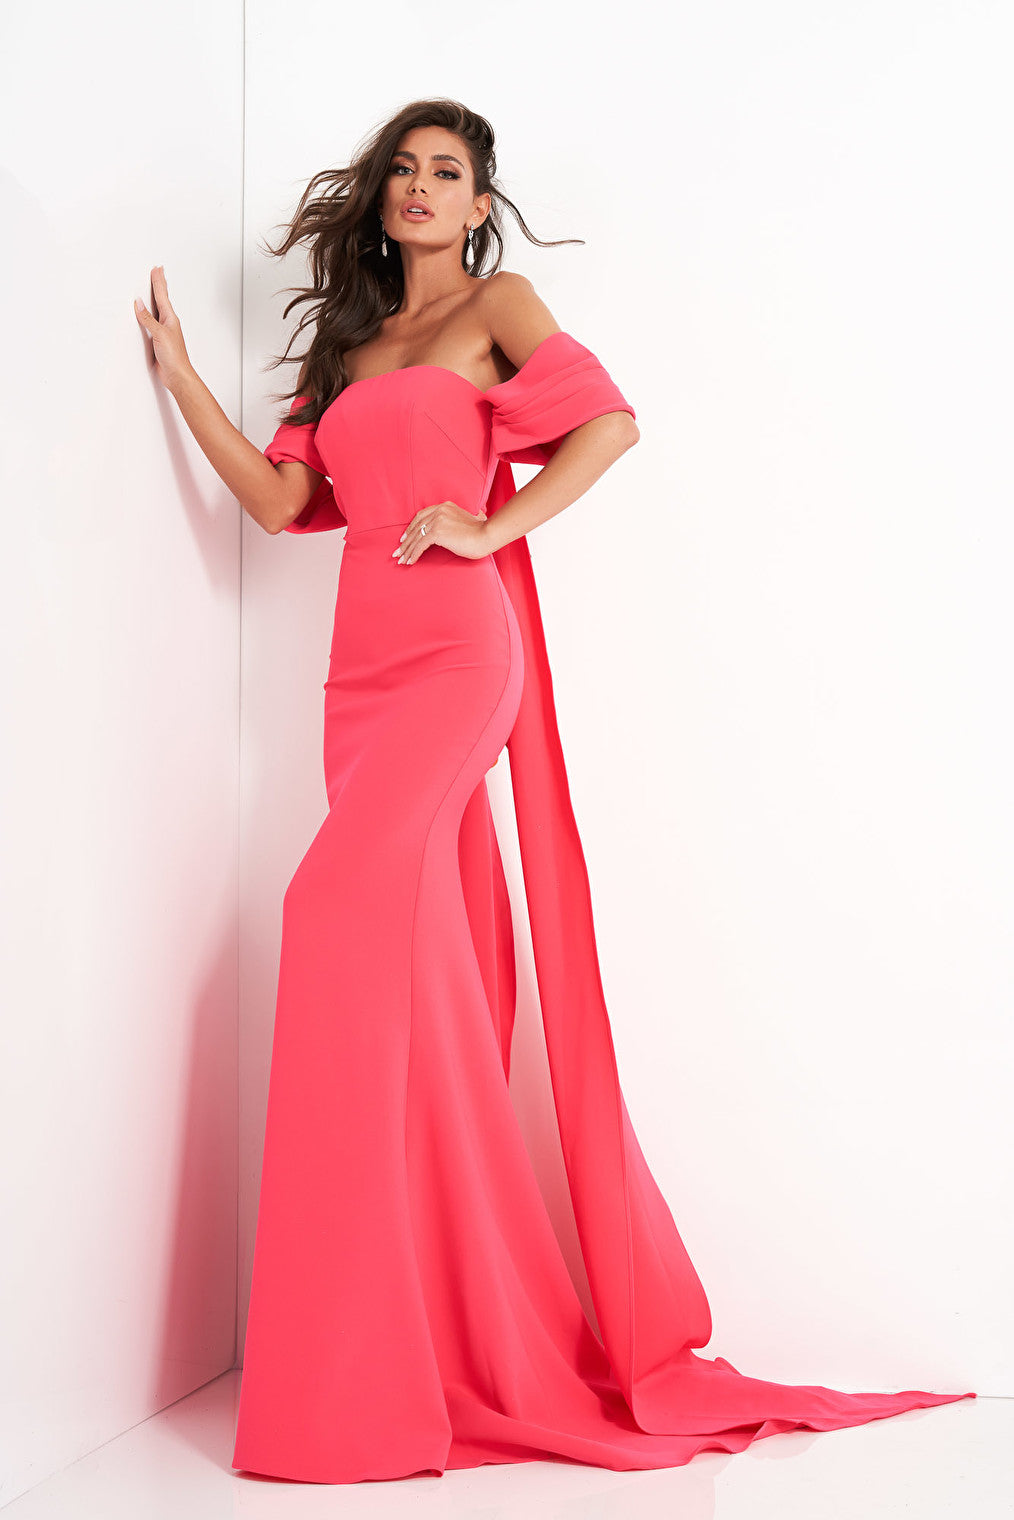 off the shoulder pink dress 04350